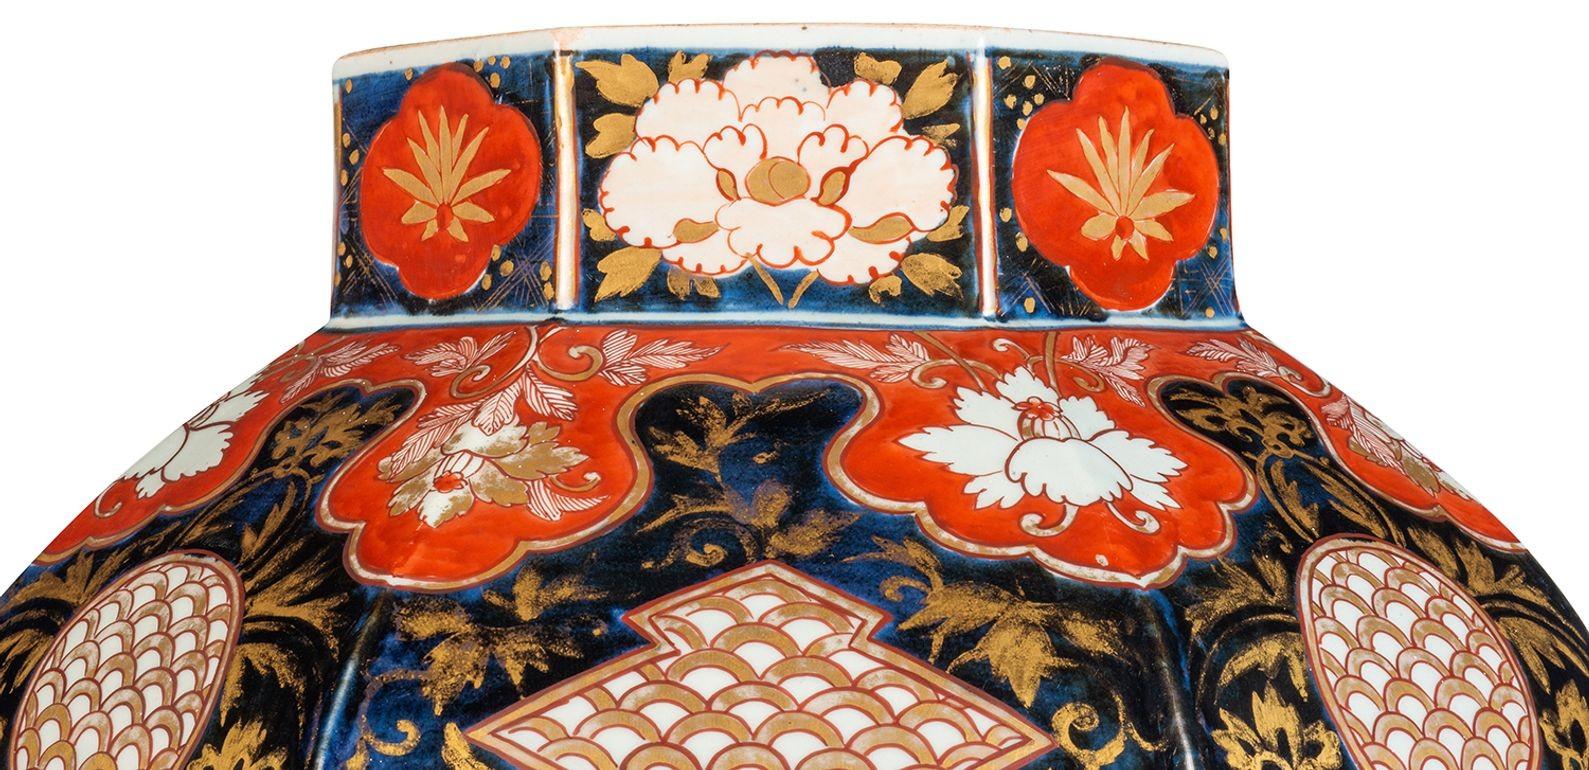 Un vase japonais Imari du XVIIIe siècle de très bonne qualité, avec une magnifique décoration feuillagée dorée, des motifs classiques, des fleurs exotiques et des oiseaux.
Nous pouvons la convertir en lampe si nécessaire.

62255 TNKZZ